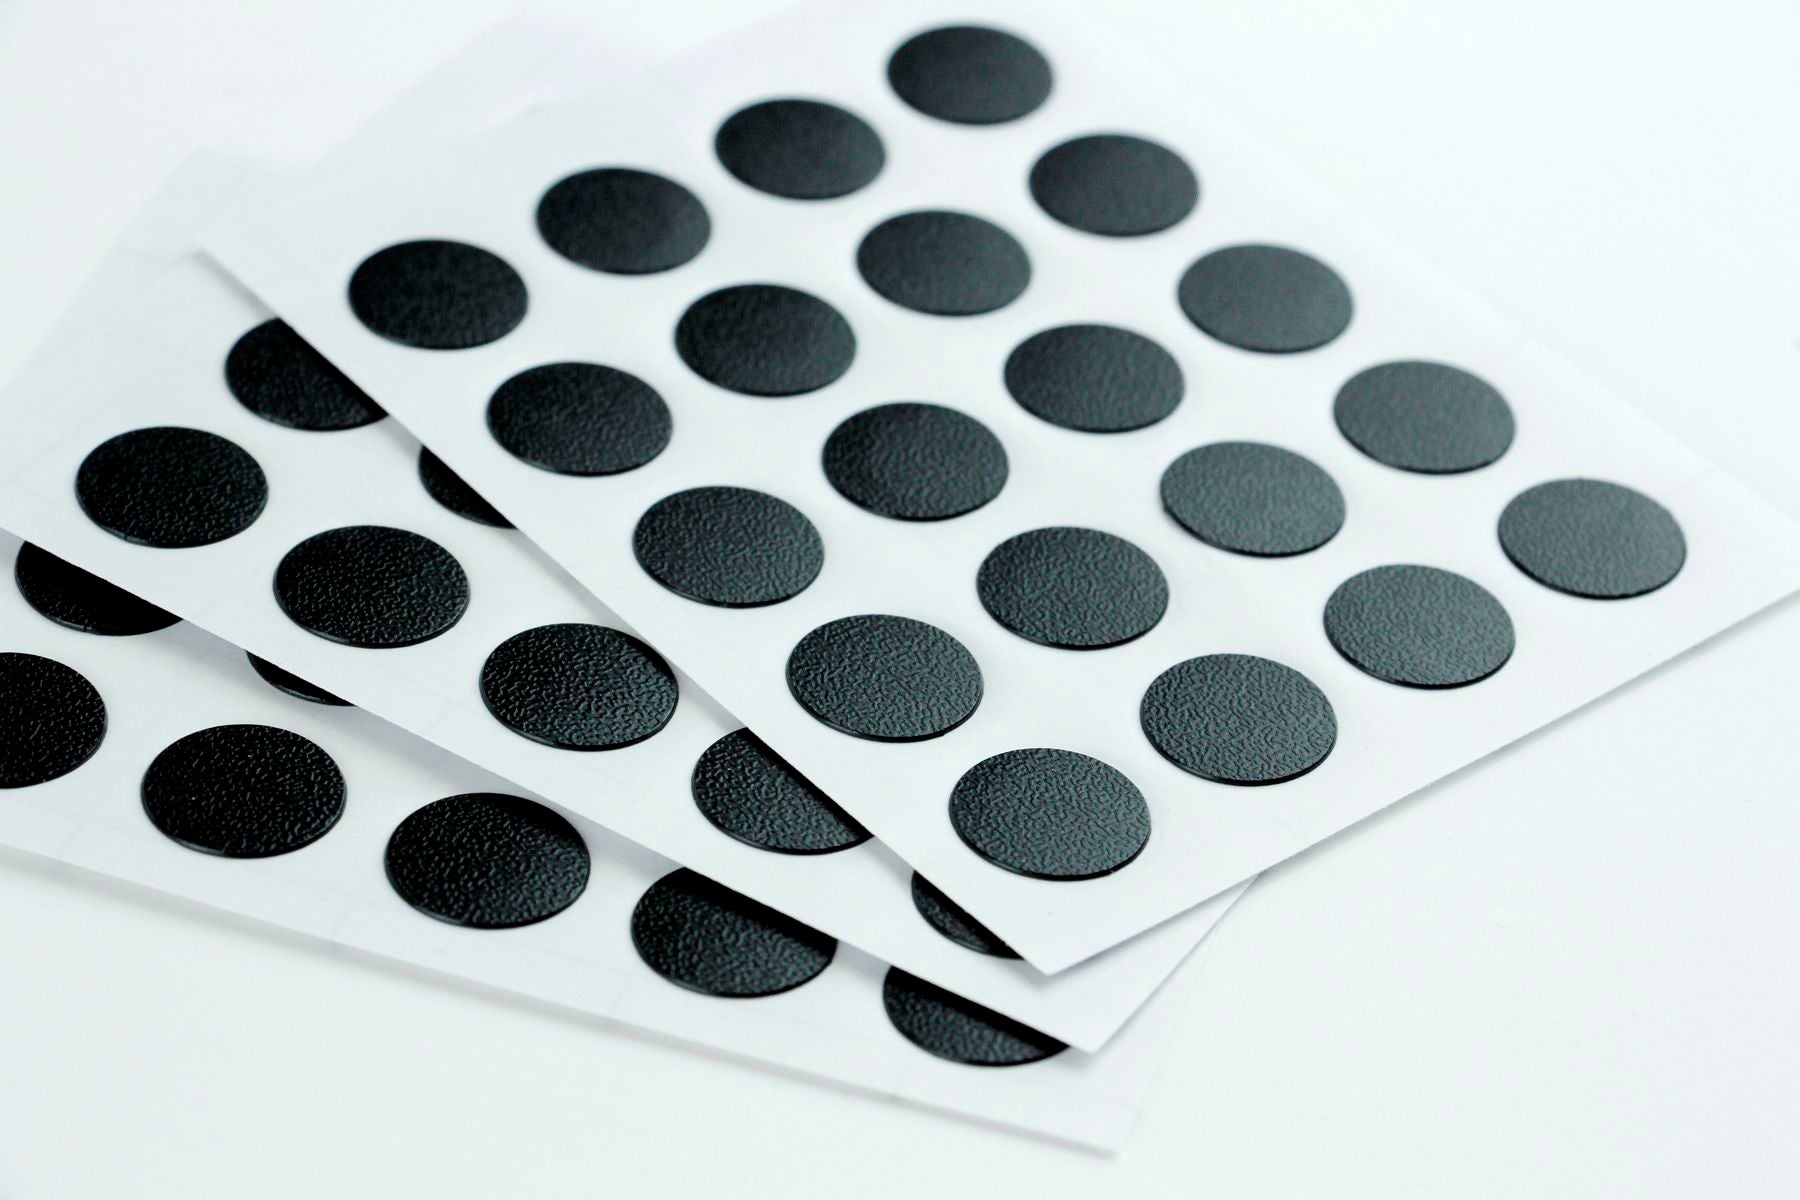 Furndiy Self-Adhesive Screw Cover Caps (Black)